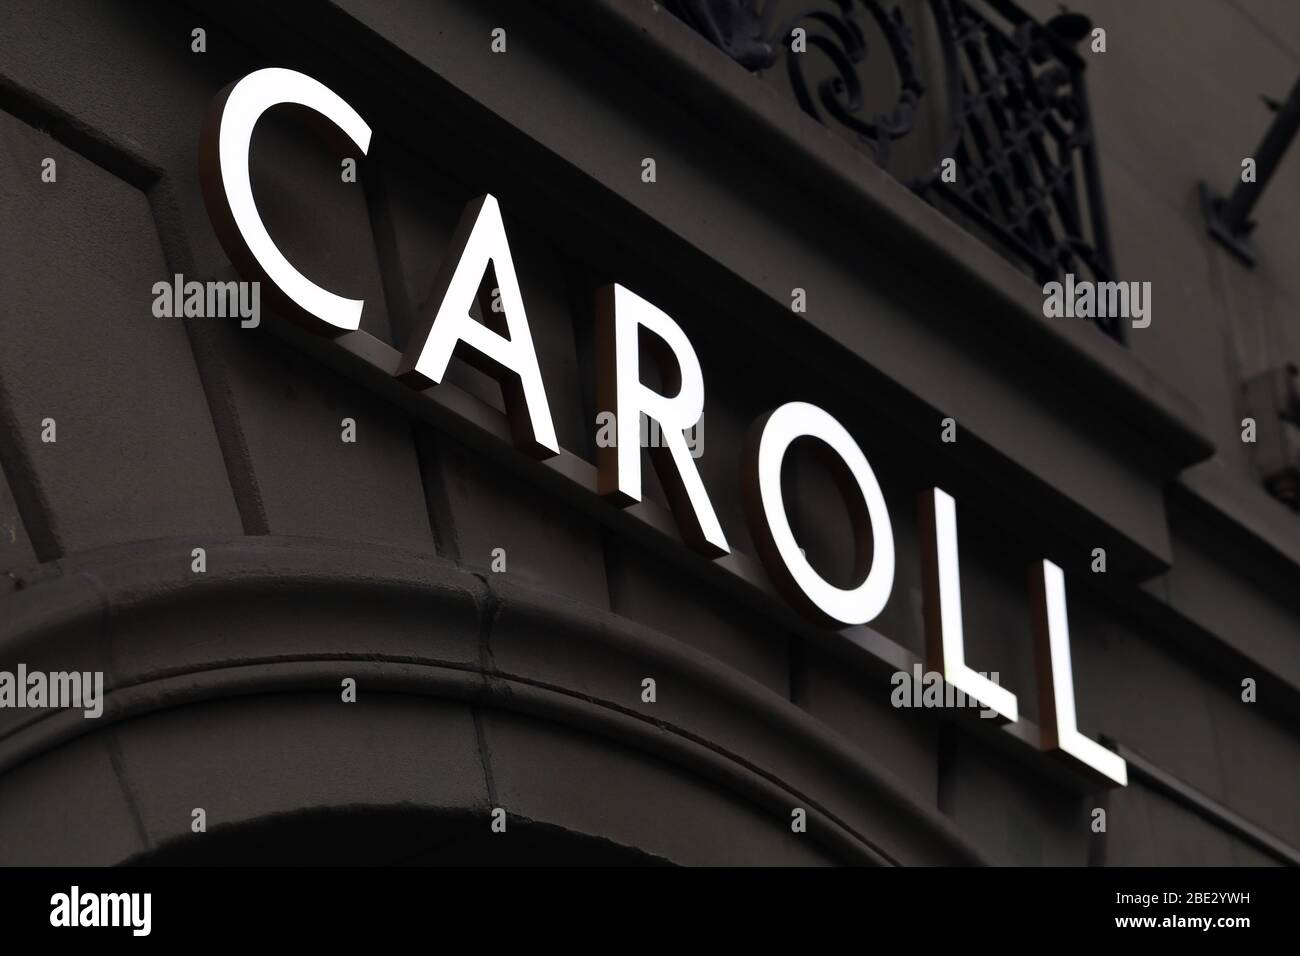 Logo de Caroll sur un mur d'un ancien bâtiment situé dans le centre-ville de Berne, Suisse, mars 2020. Le logo est allumé. Caroll est une marque de mode. Banque D'Images